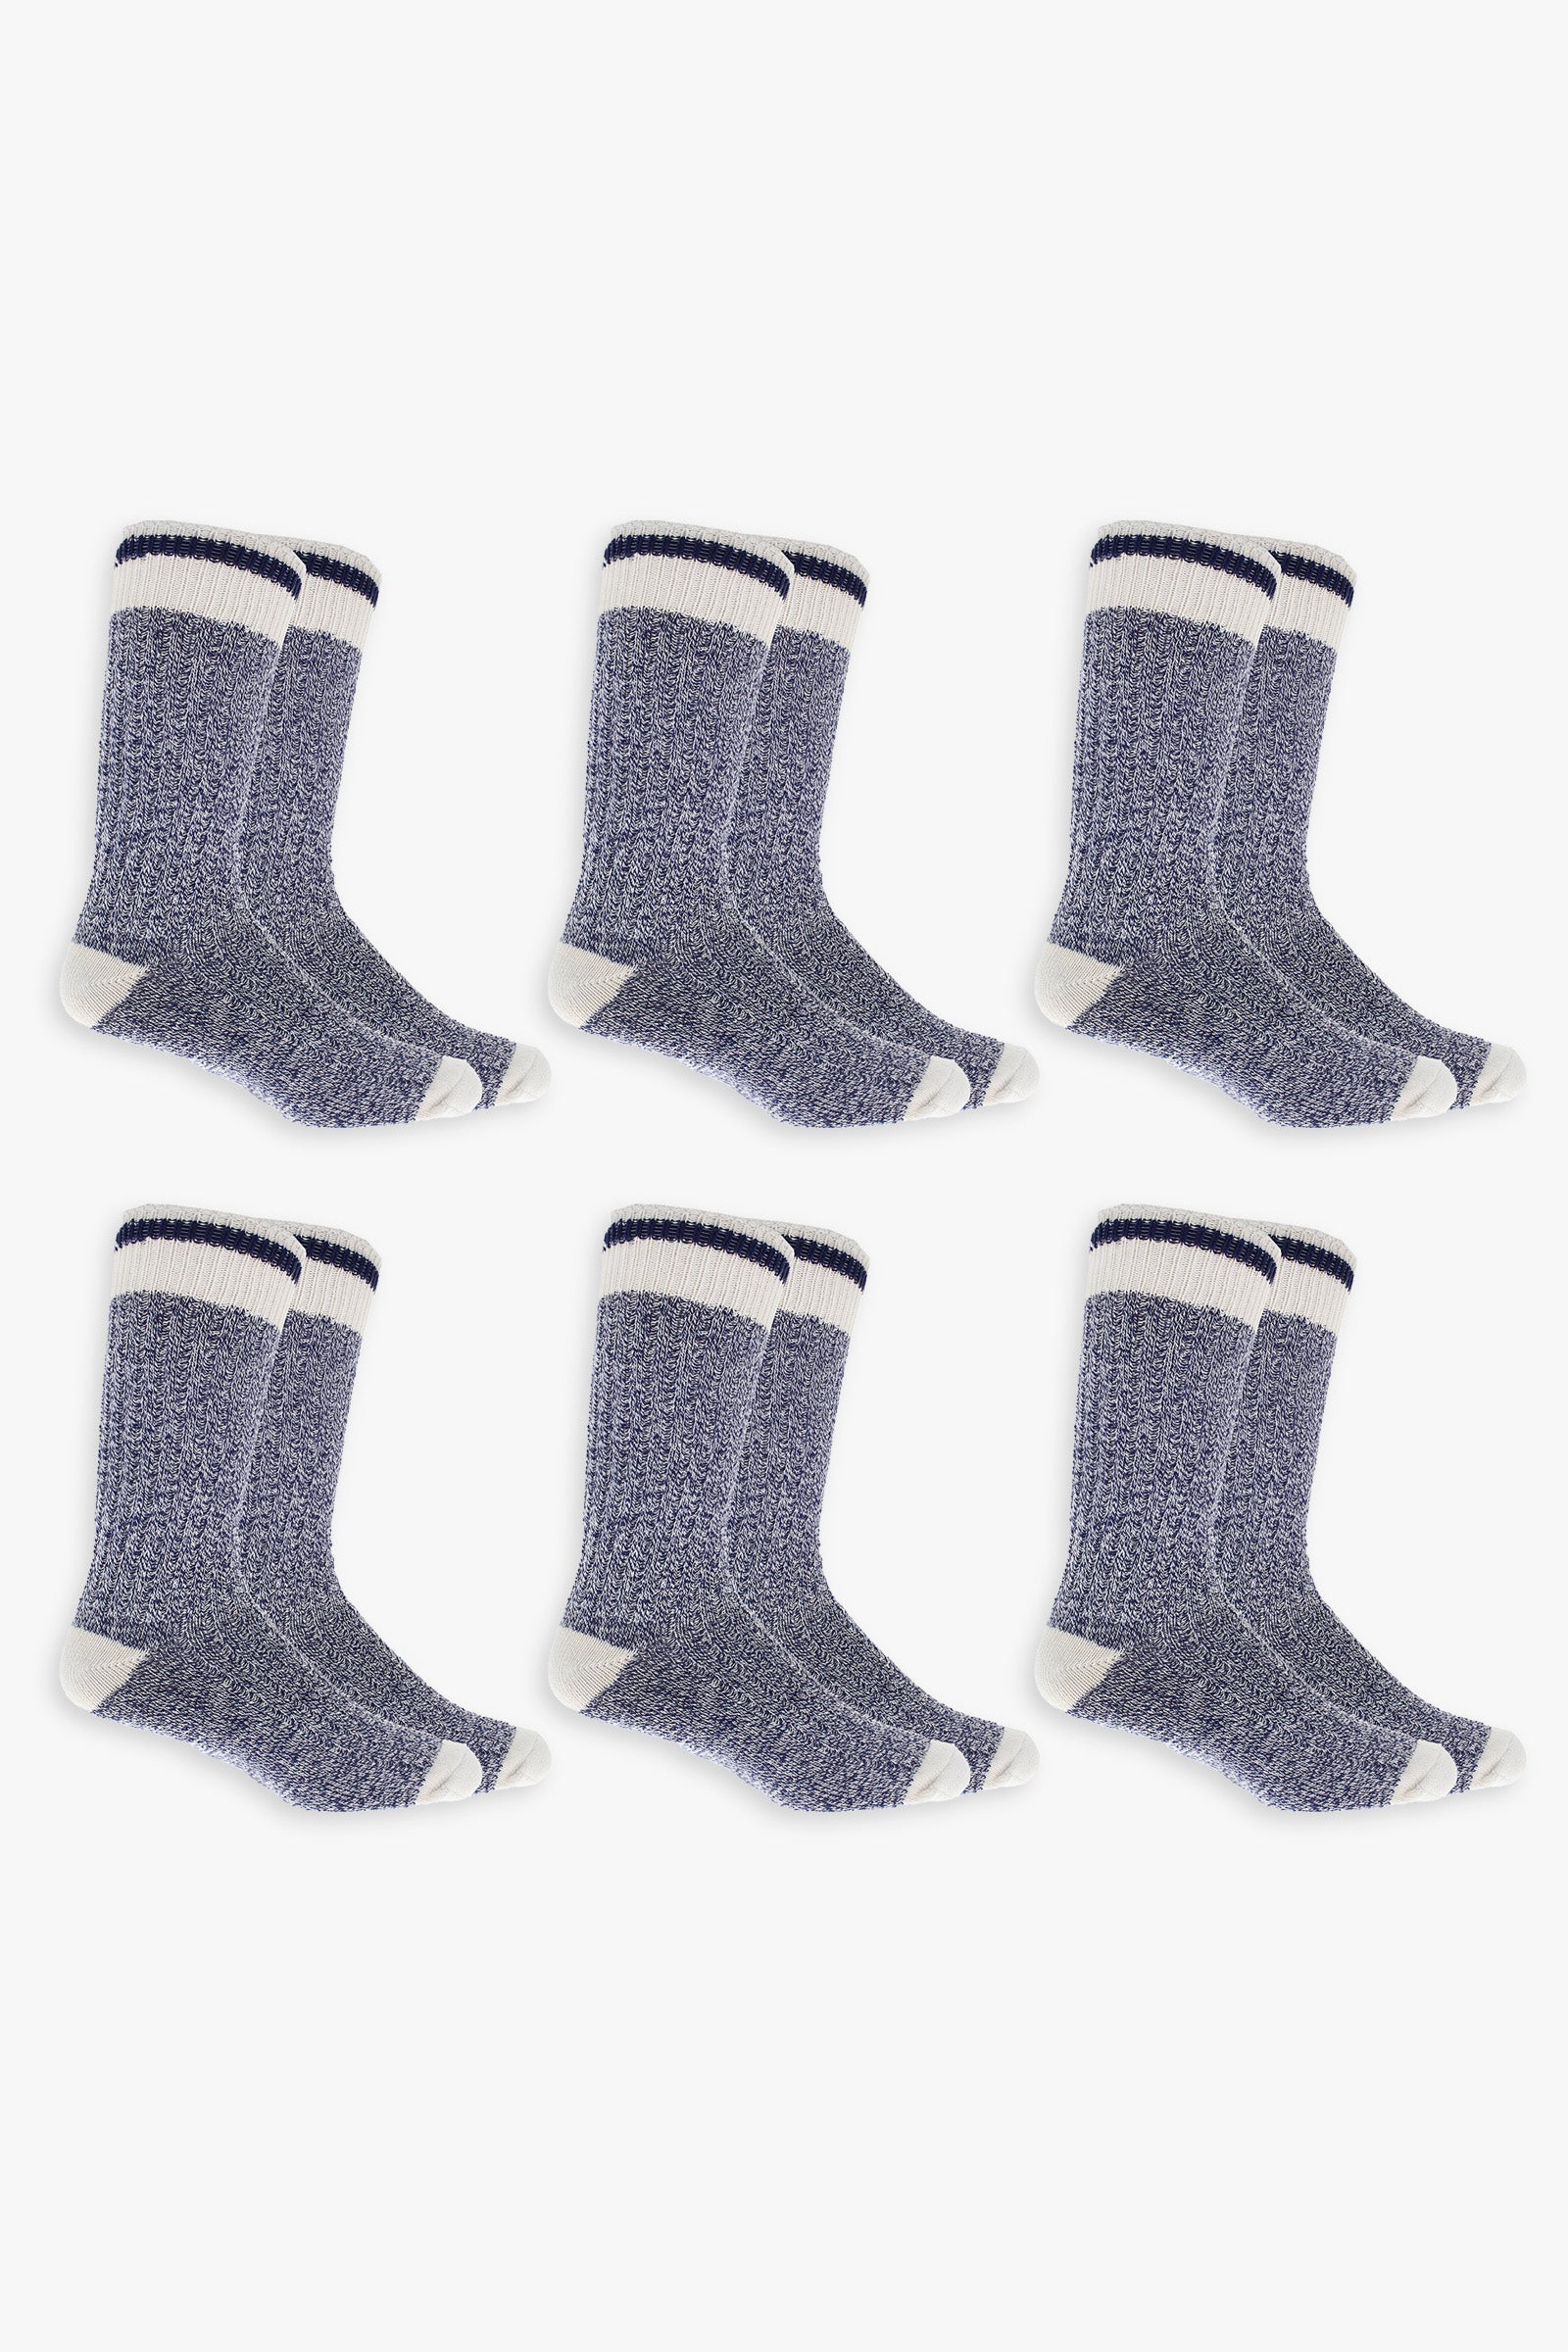 Marled Blue Ladies Boot Socks